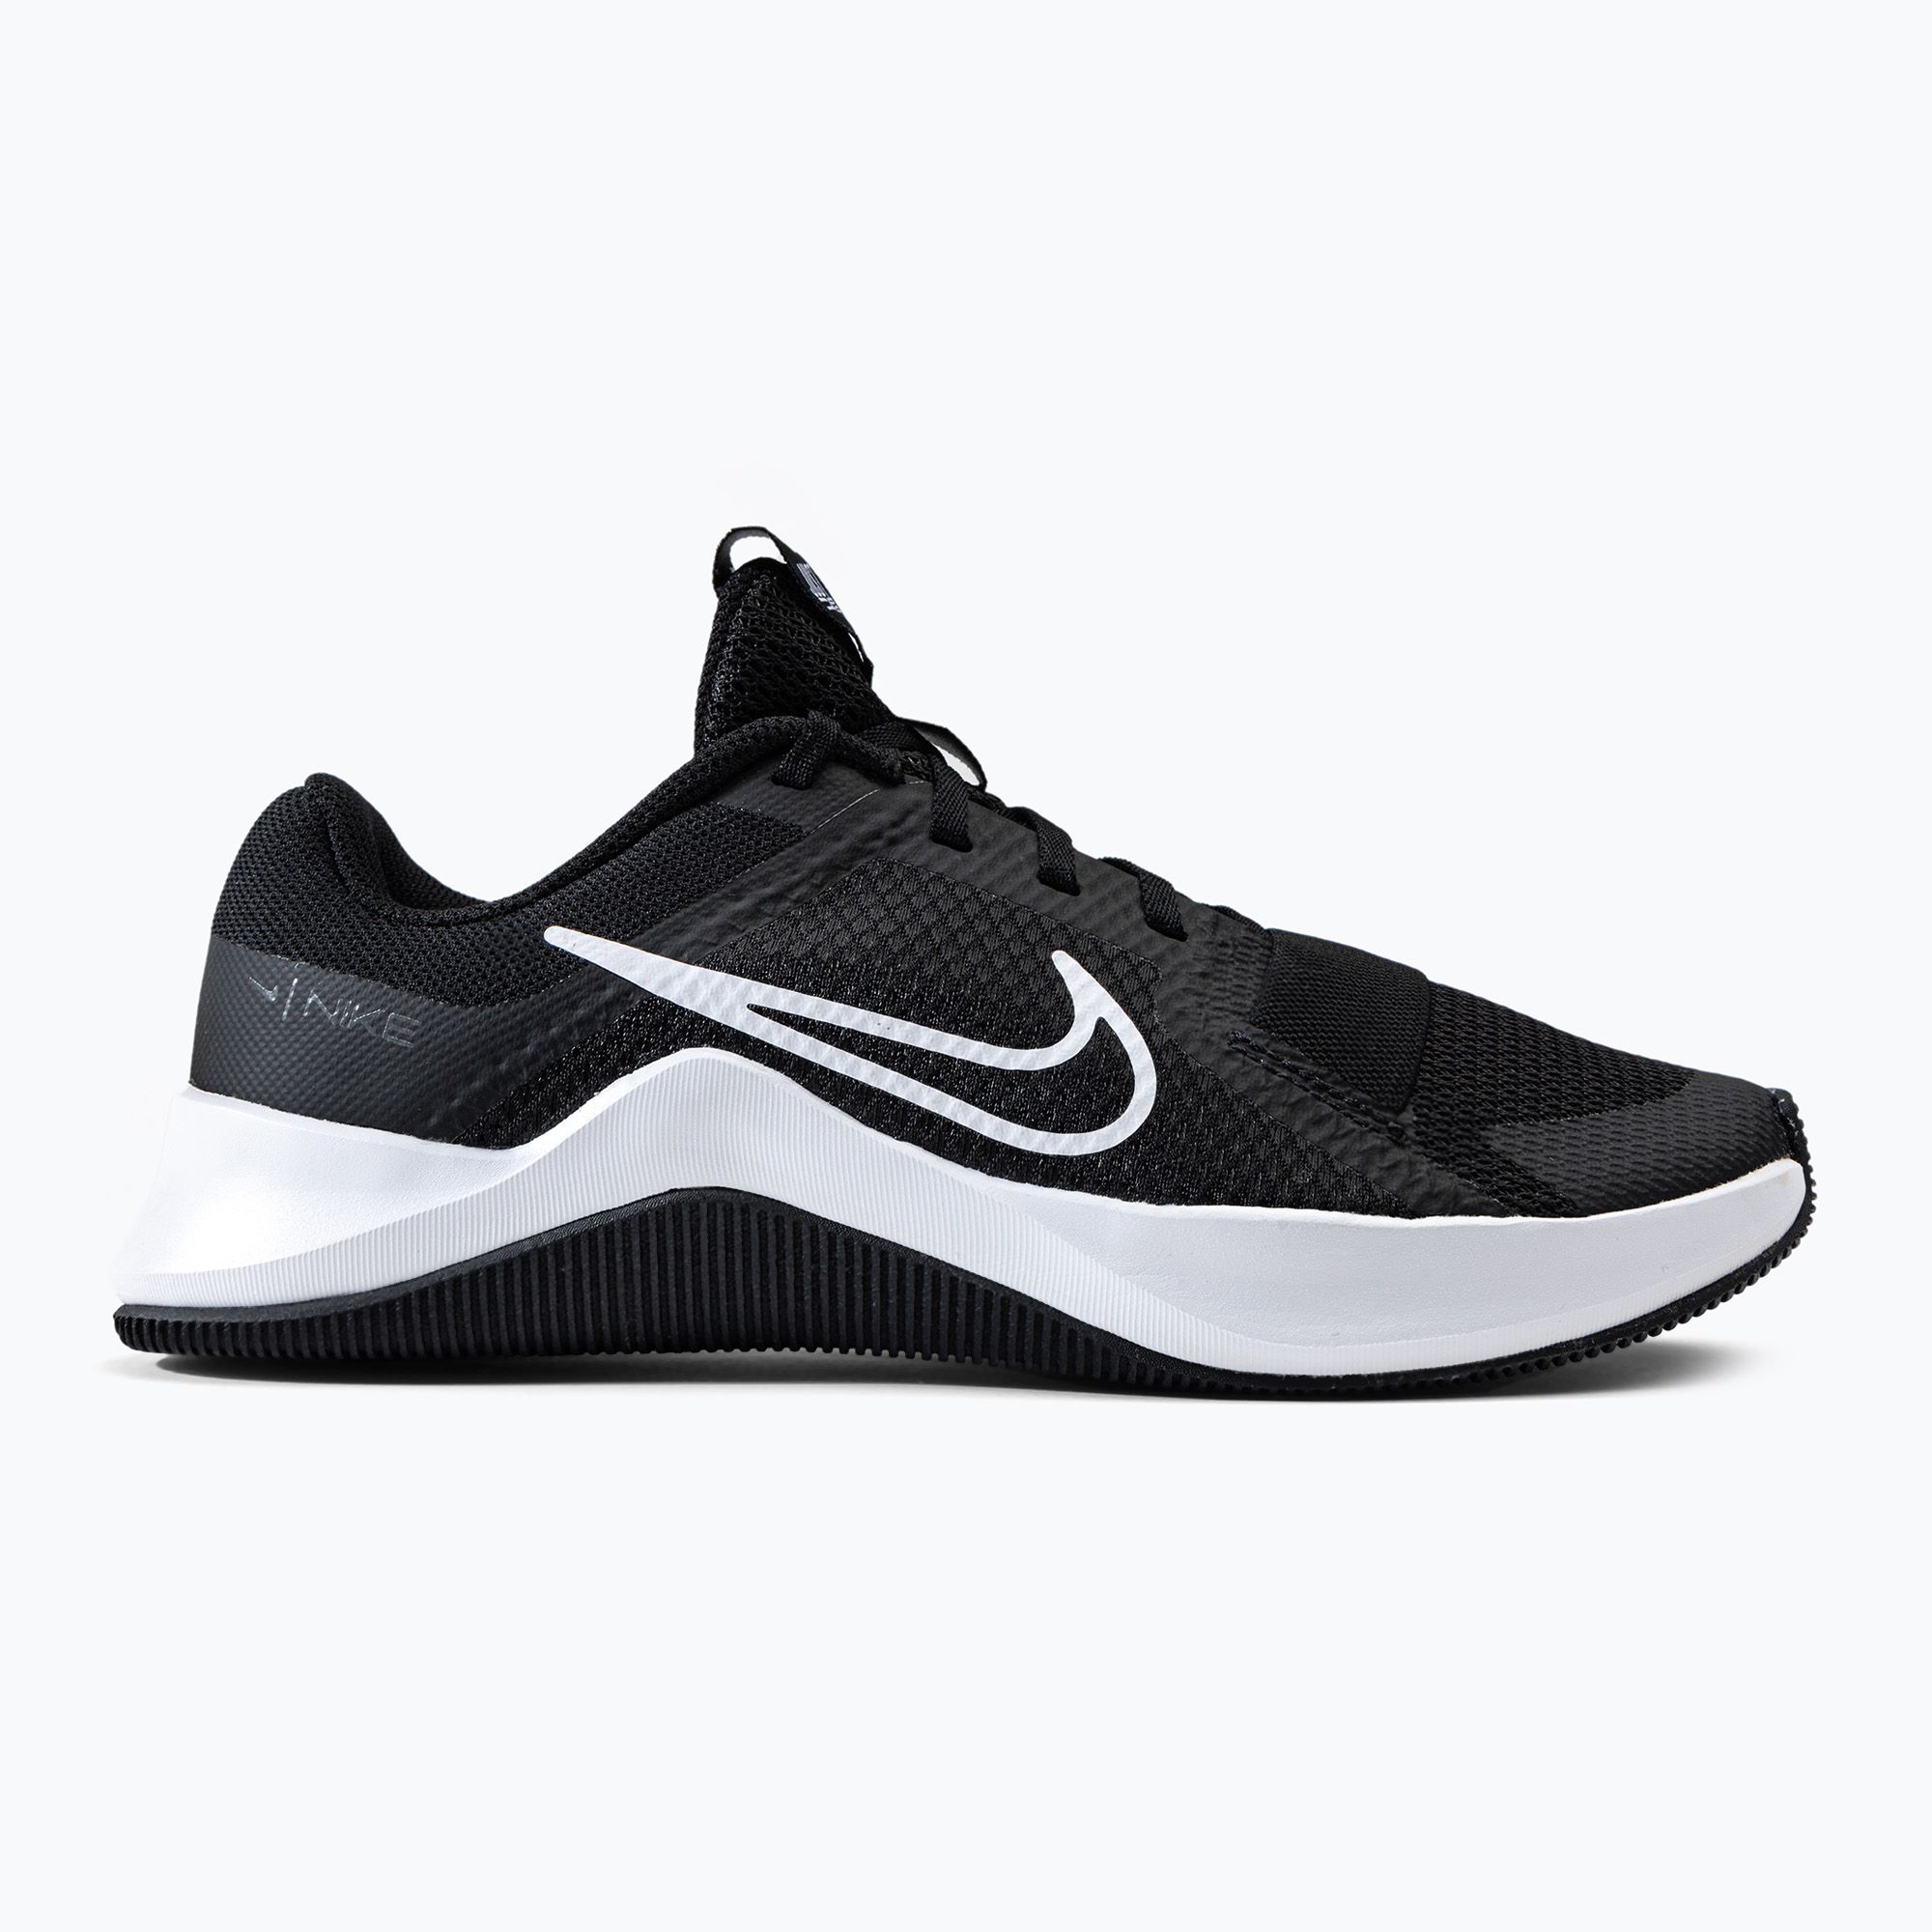 Buty treningowe damskie Nike Mc Trainer 2 black/white/iron grey zdjęcie nr 2